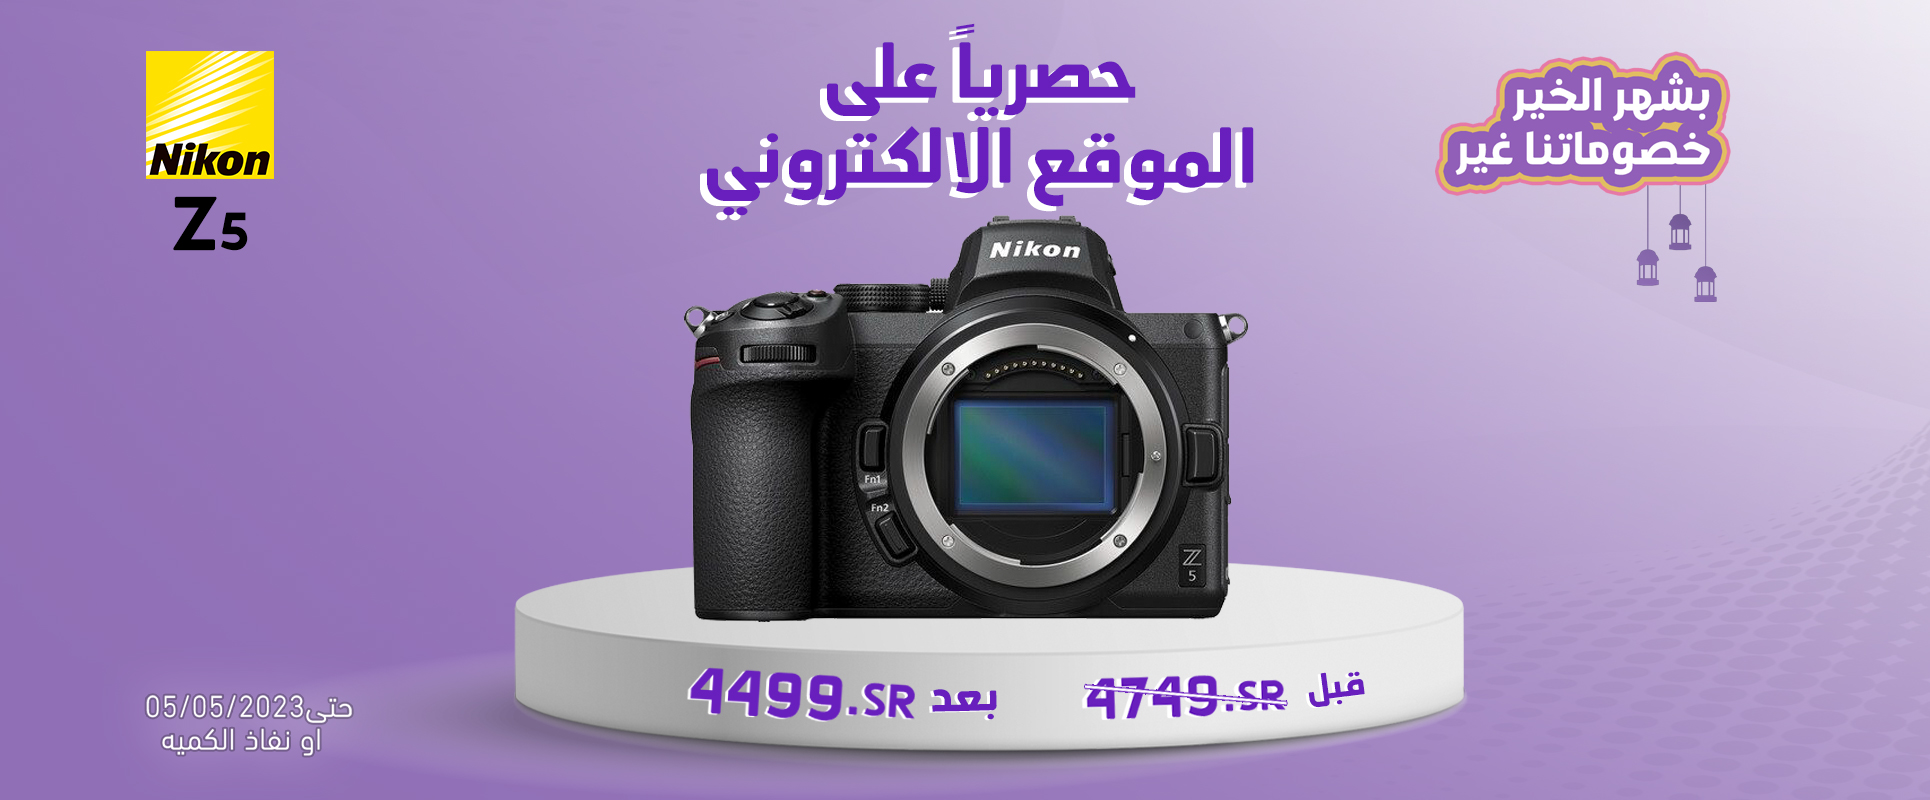 Nikon z5 BODY offer